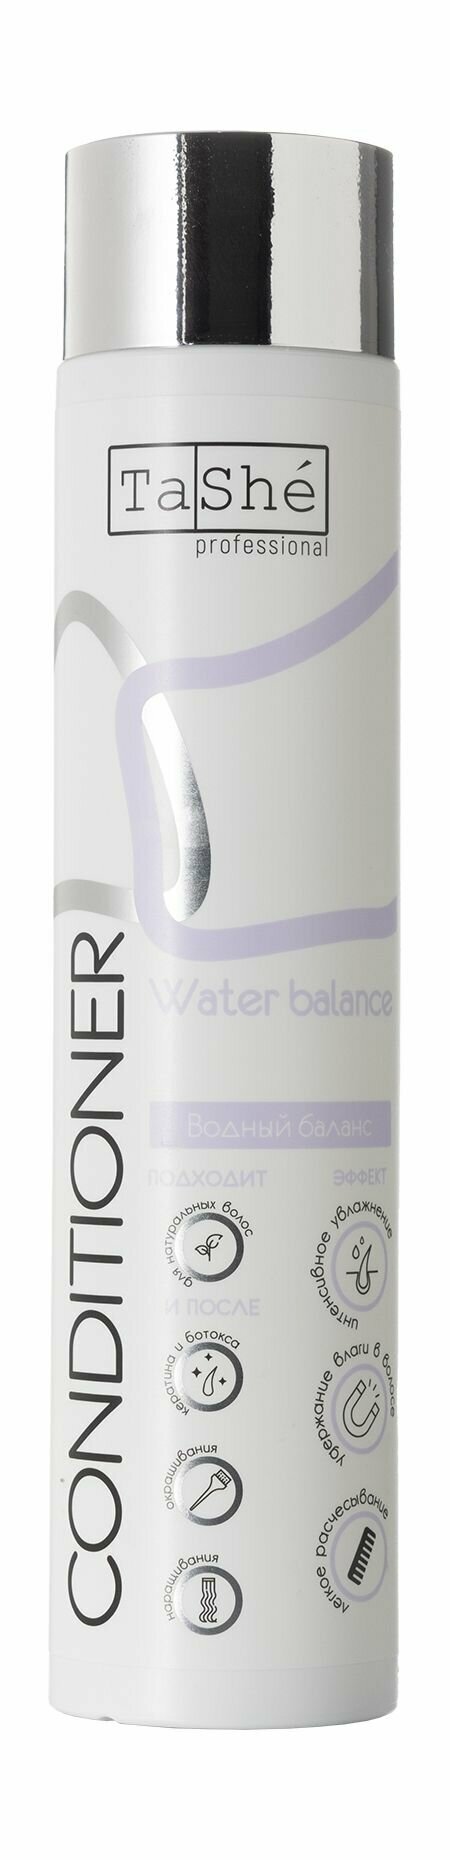 Кондиционер для поддержания водного баланса волос / Tashe Professional Water Balance Conditioner